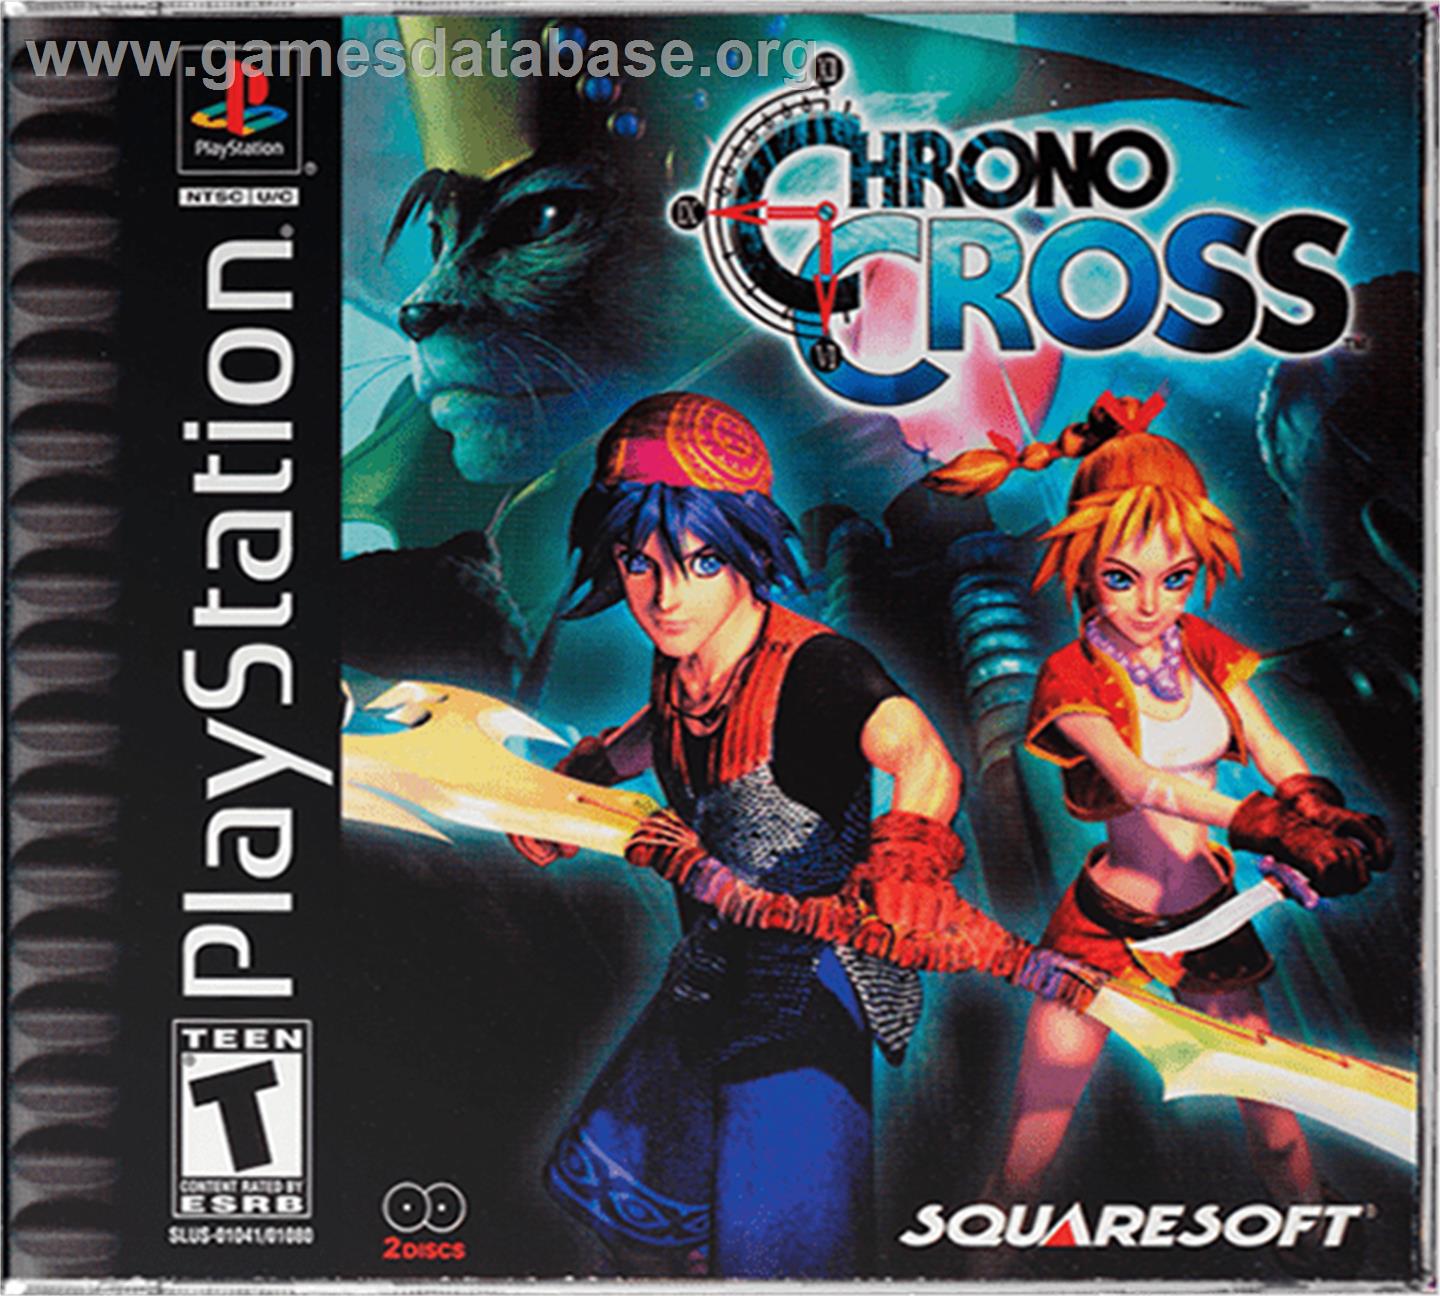 Chrono Cross - Sony Playstation - Artwork - Box